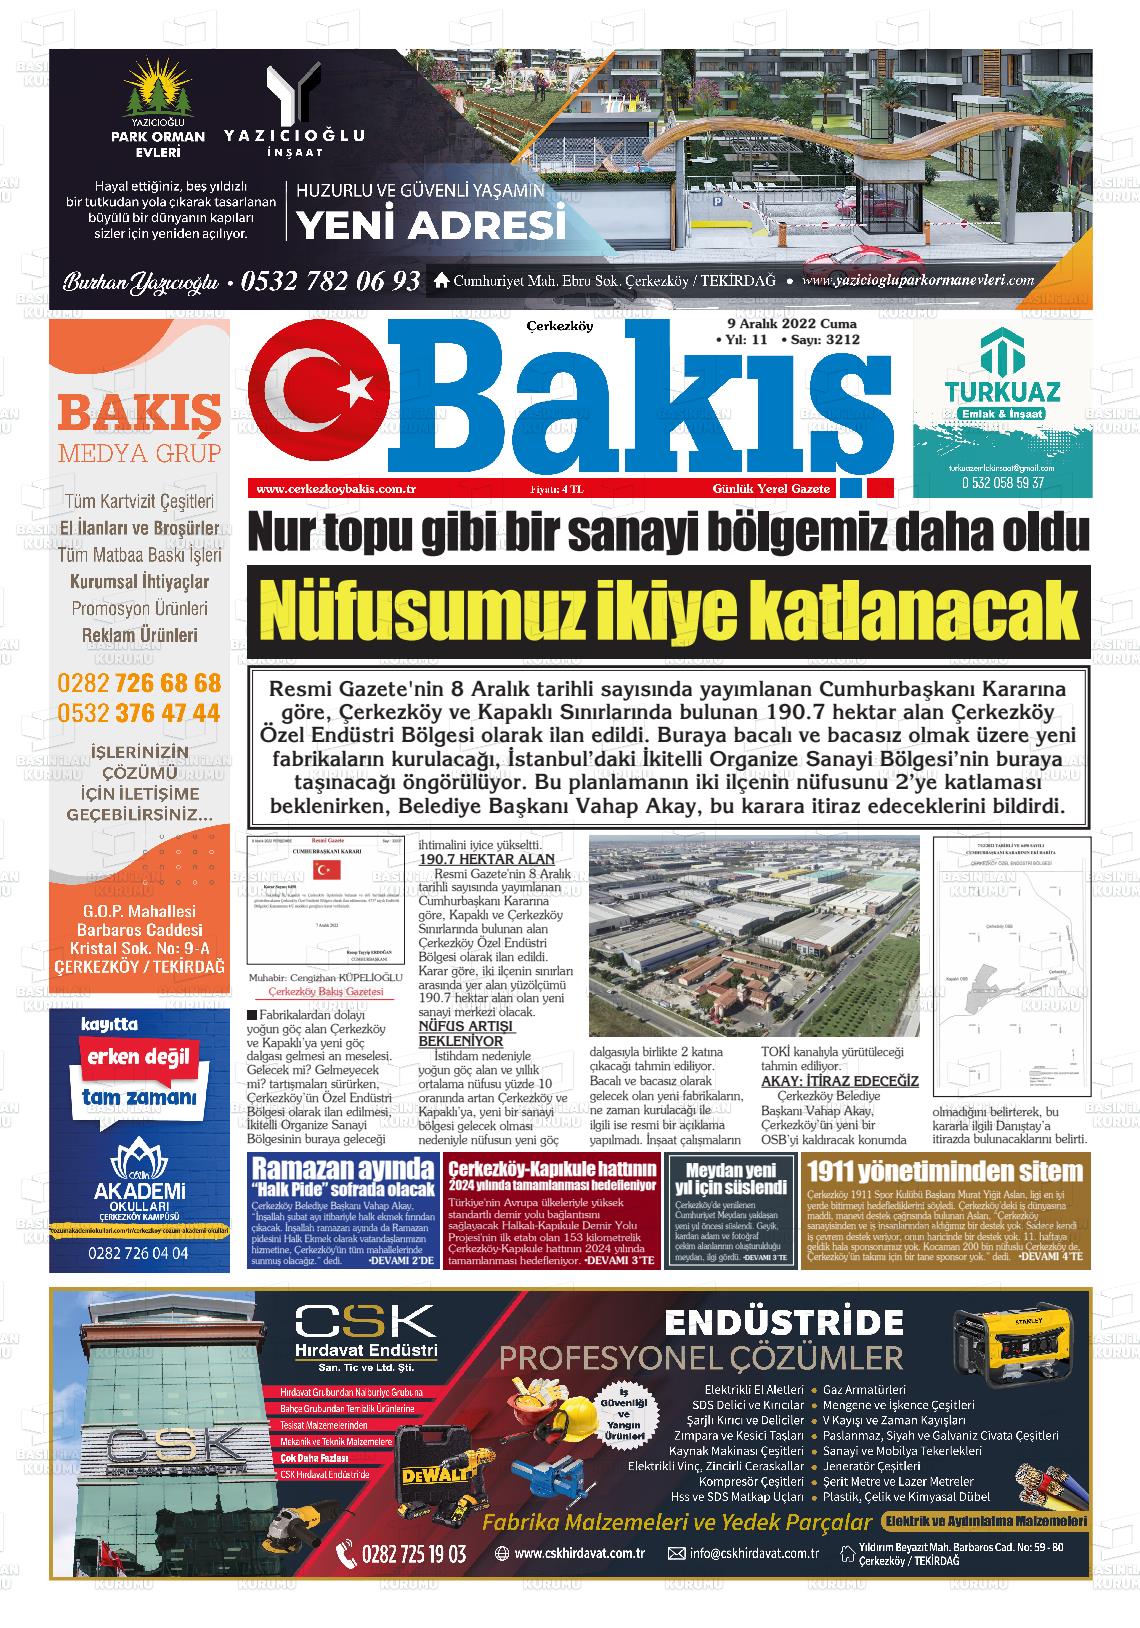 09 Aralık 2022 Çerkezköy Bakış Gazete Manşeti